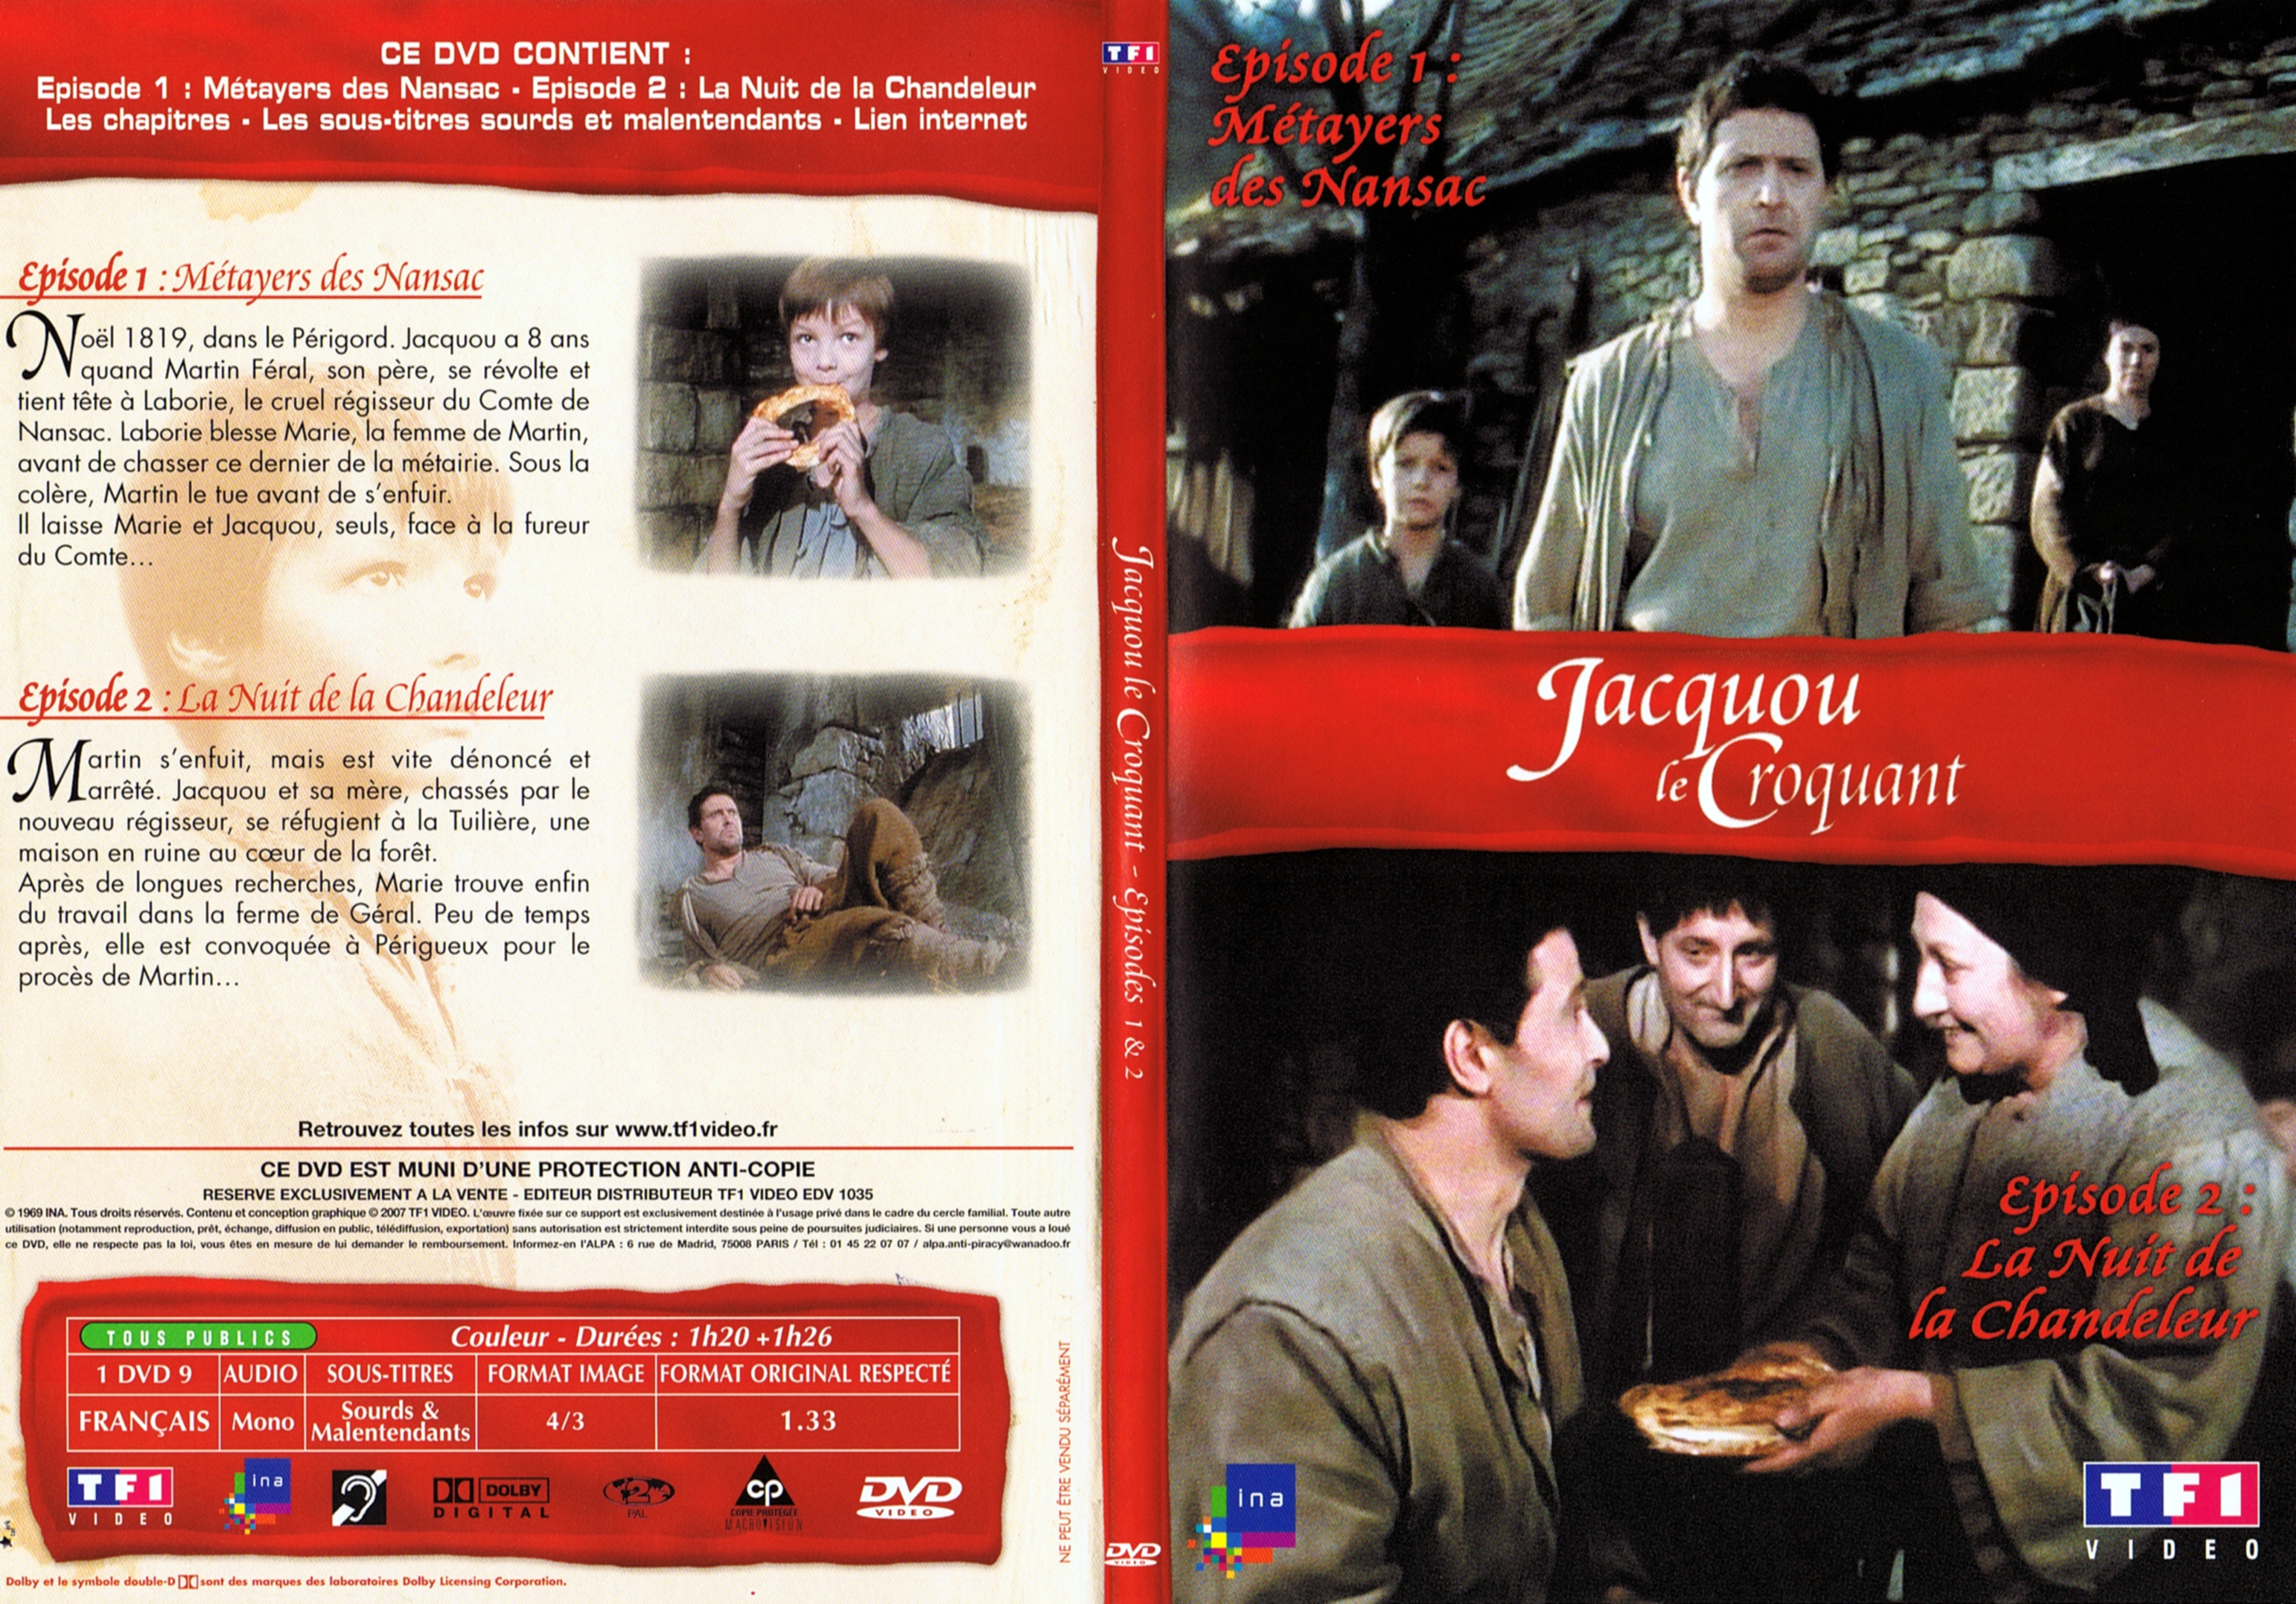 Jaquette DVD Jacquou le croquant DVD 1